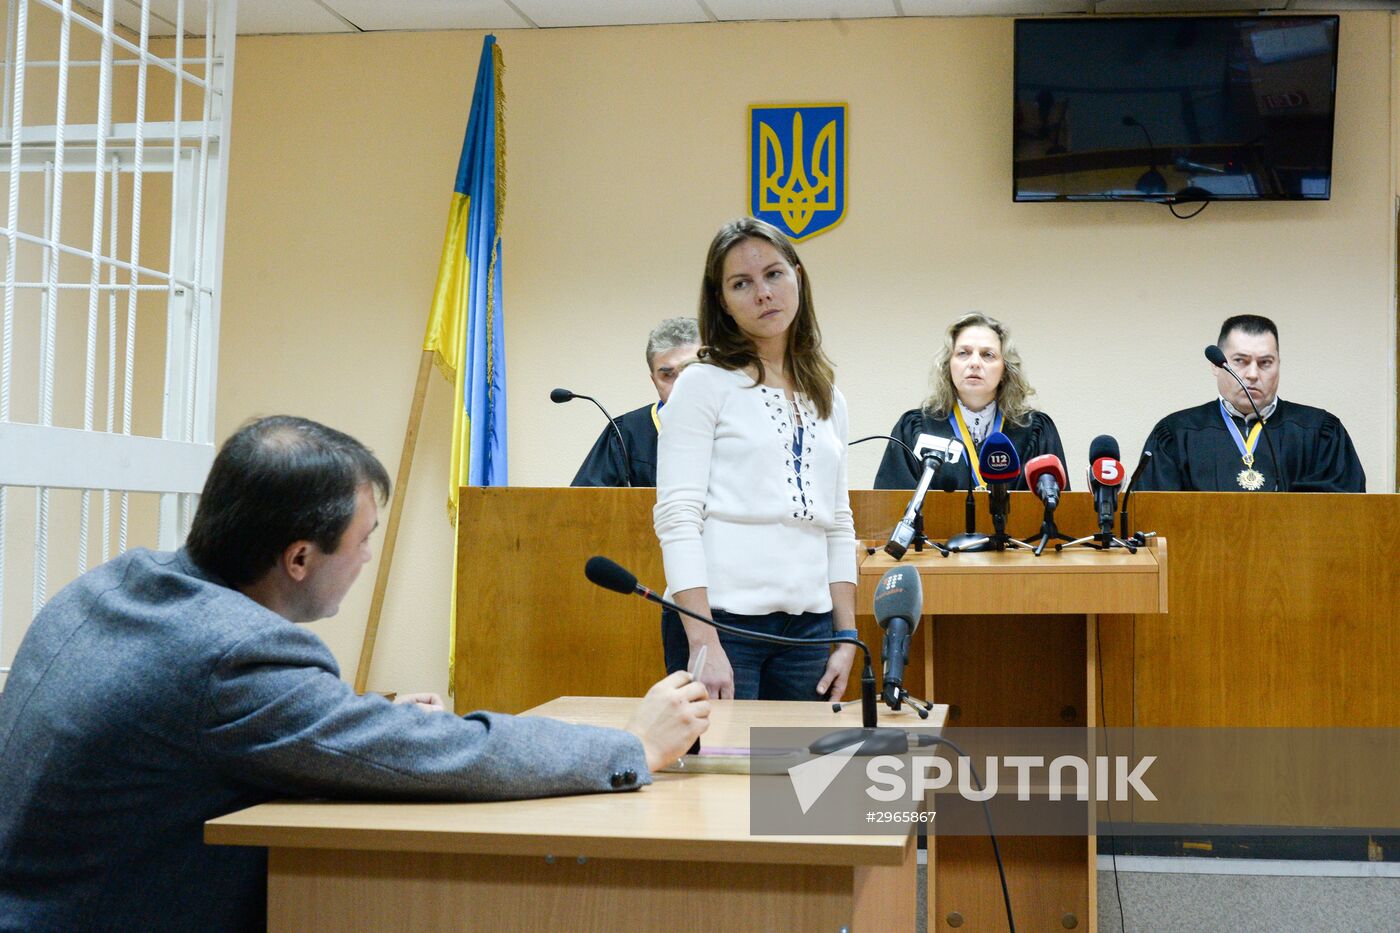 Nadezhda Savchenko's sister questioned at Kiev court